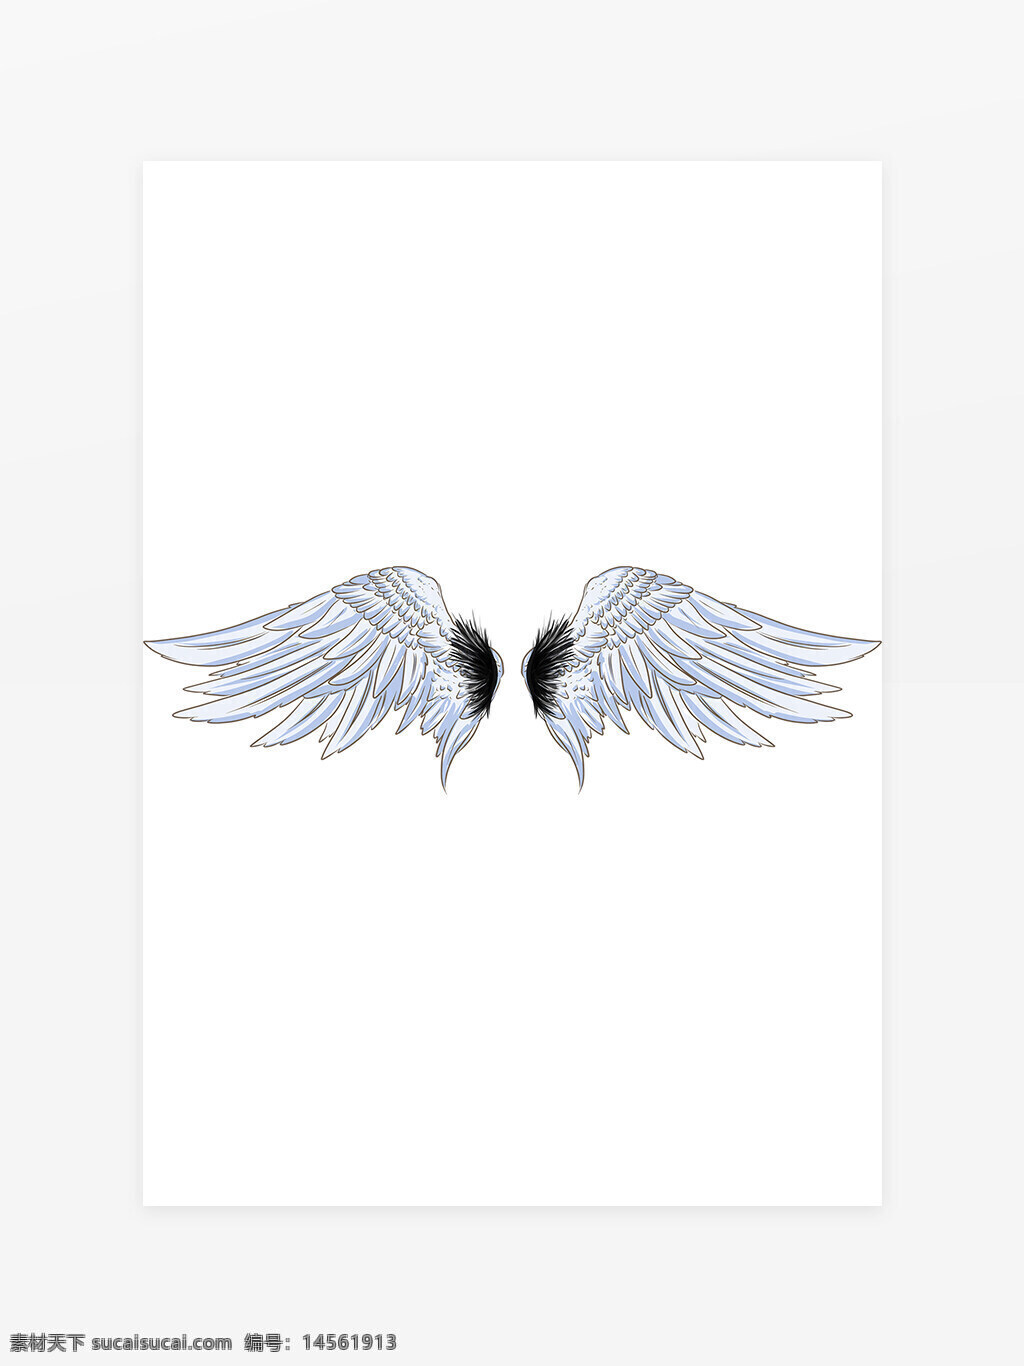 浅蓝色羽毛 翅膀图片 黑色翅膀 飞翔翅膀 天使之翼